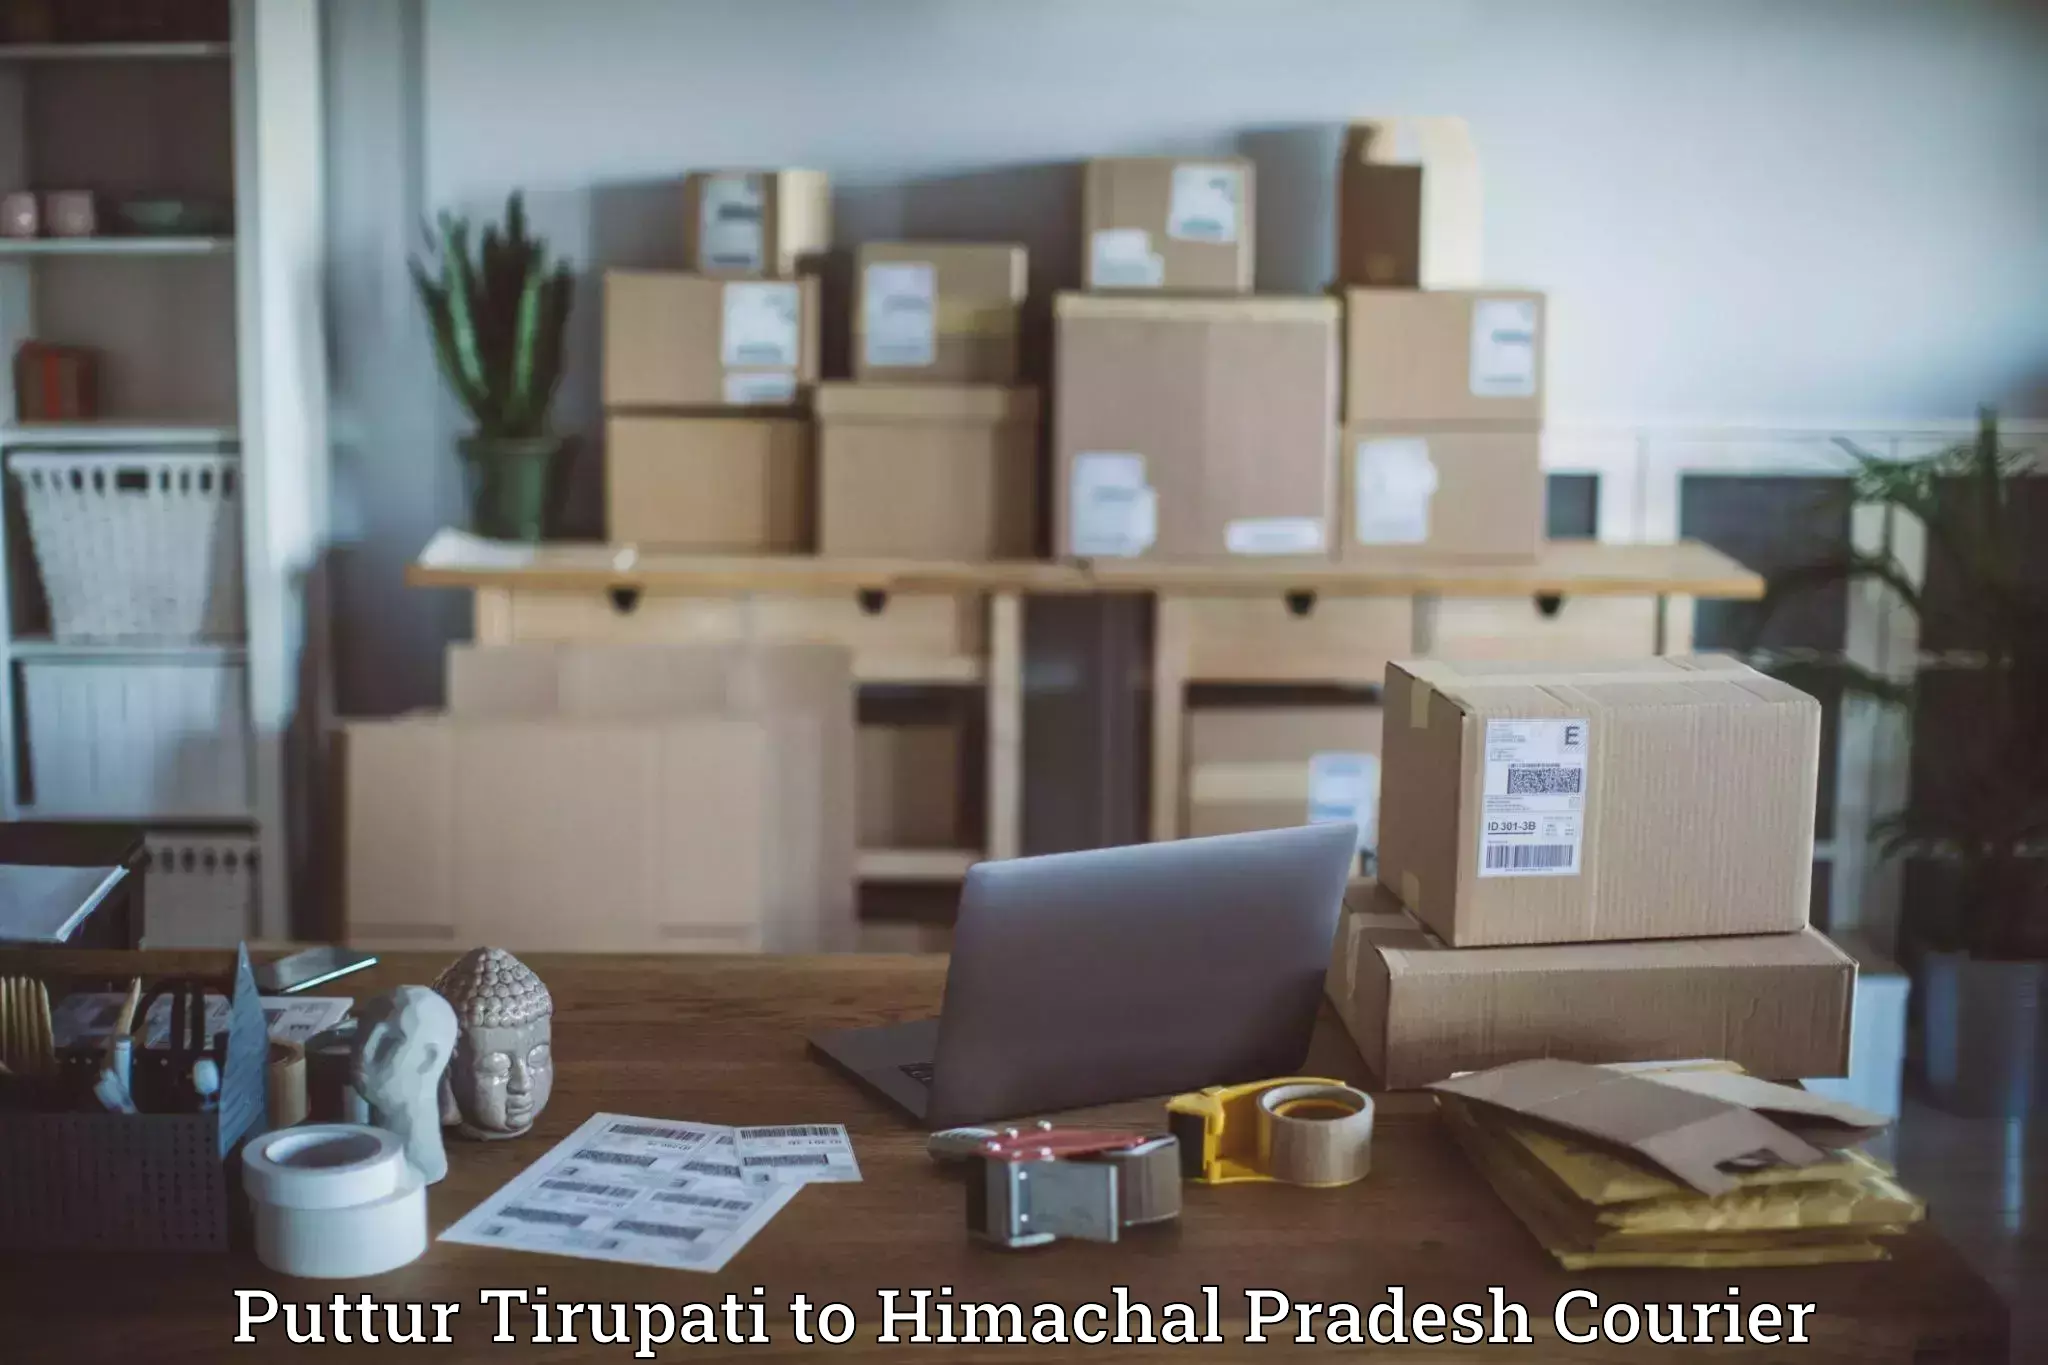 Express logistics service Puttur Tirupati to Anni Kullu